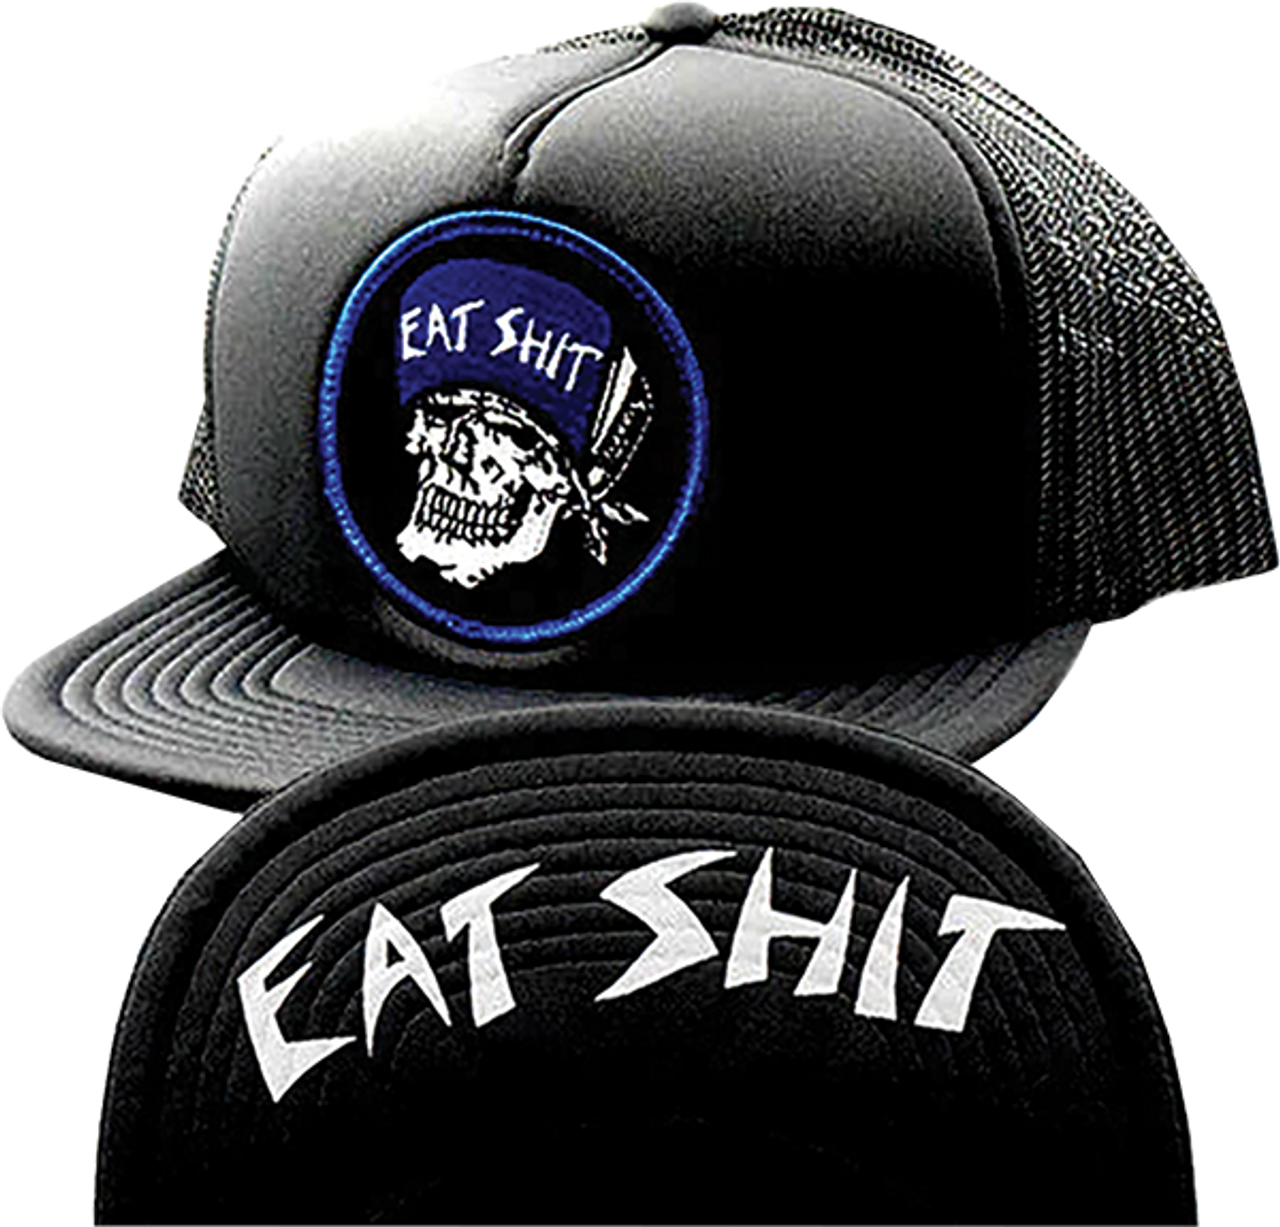 SUICIDAL EAT SHIT PATCH FLIP HAT ADJ-BLACK